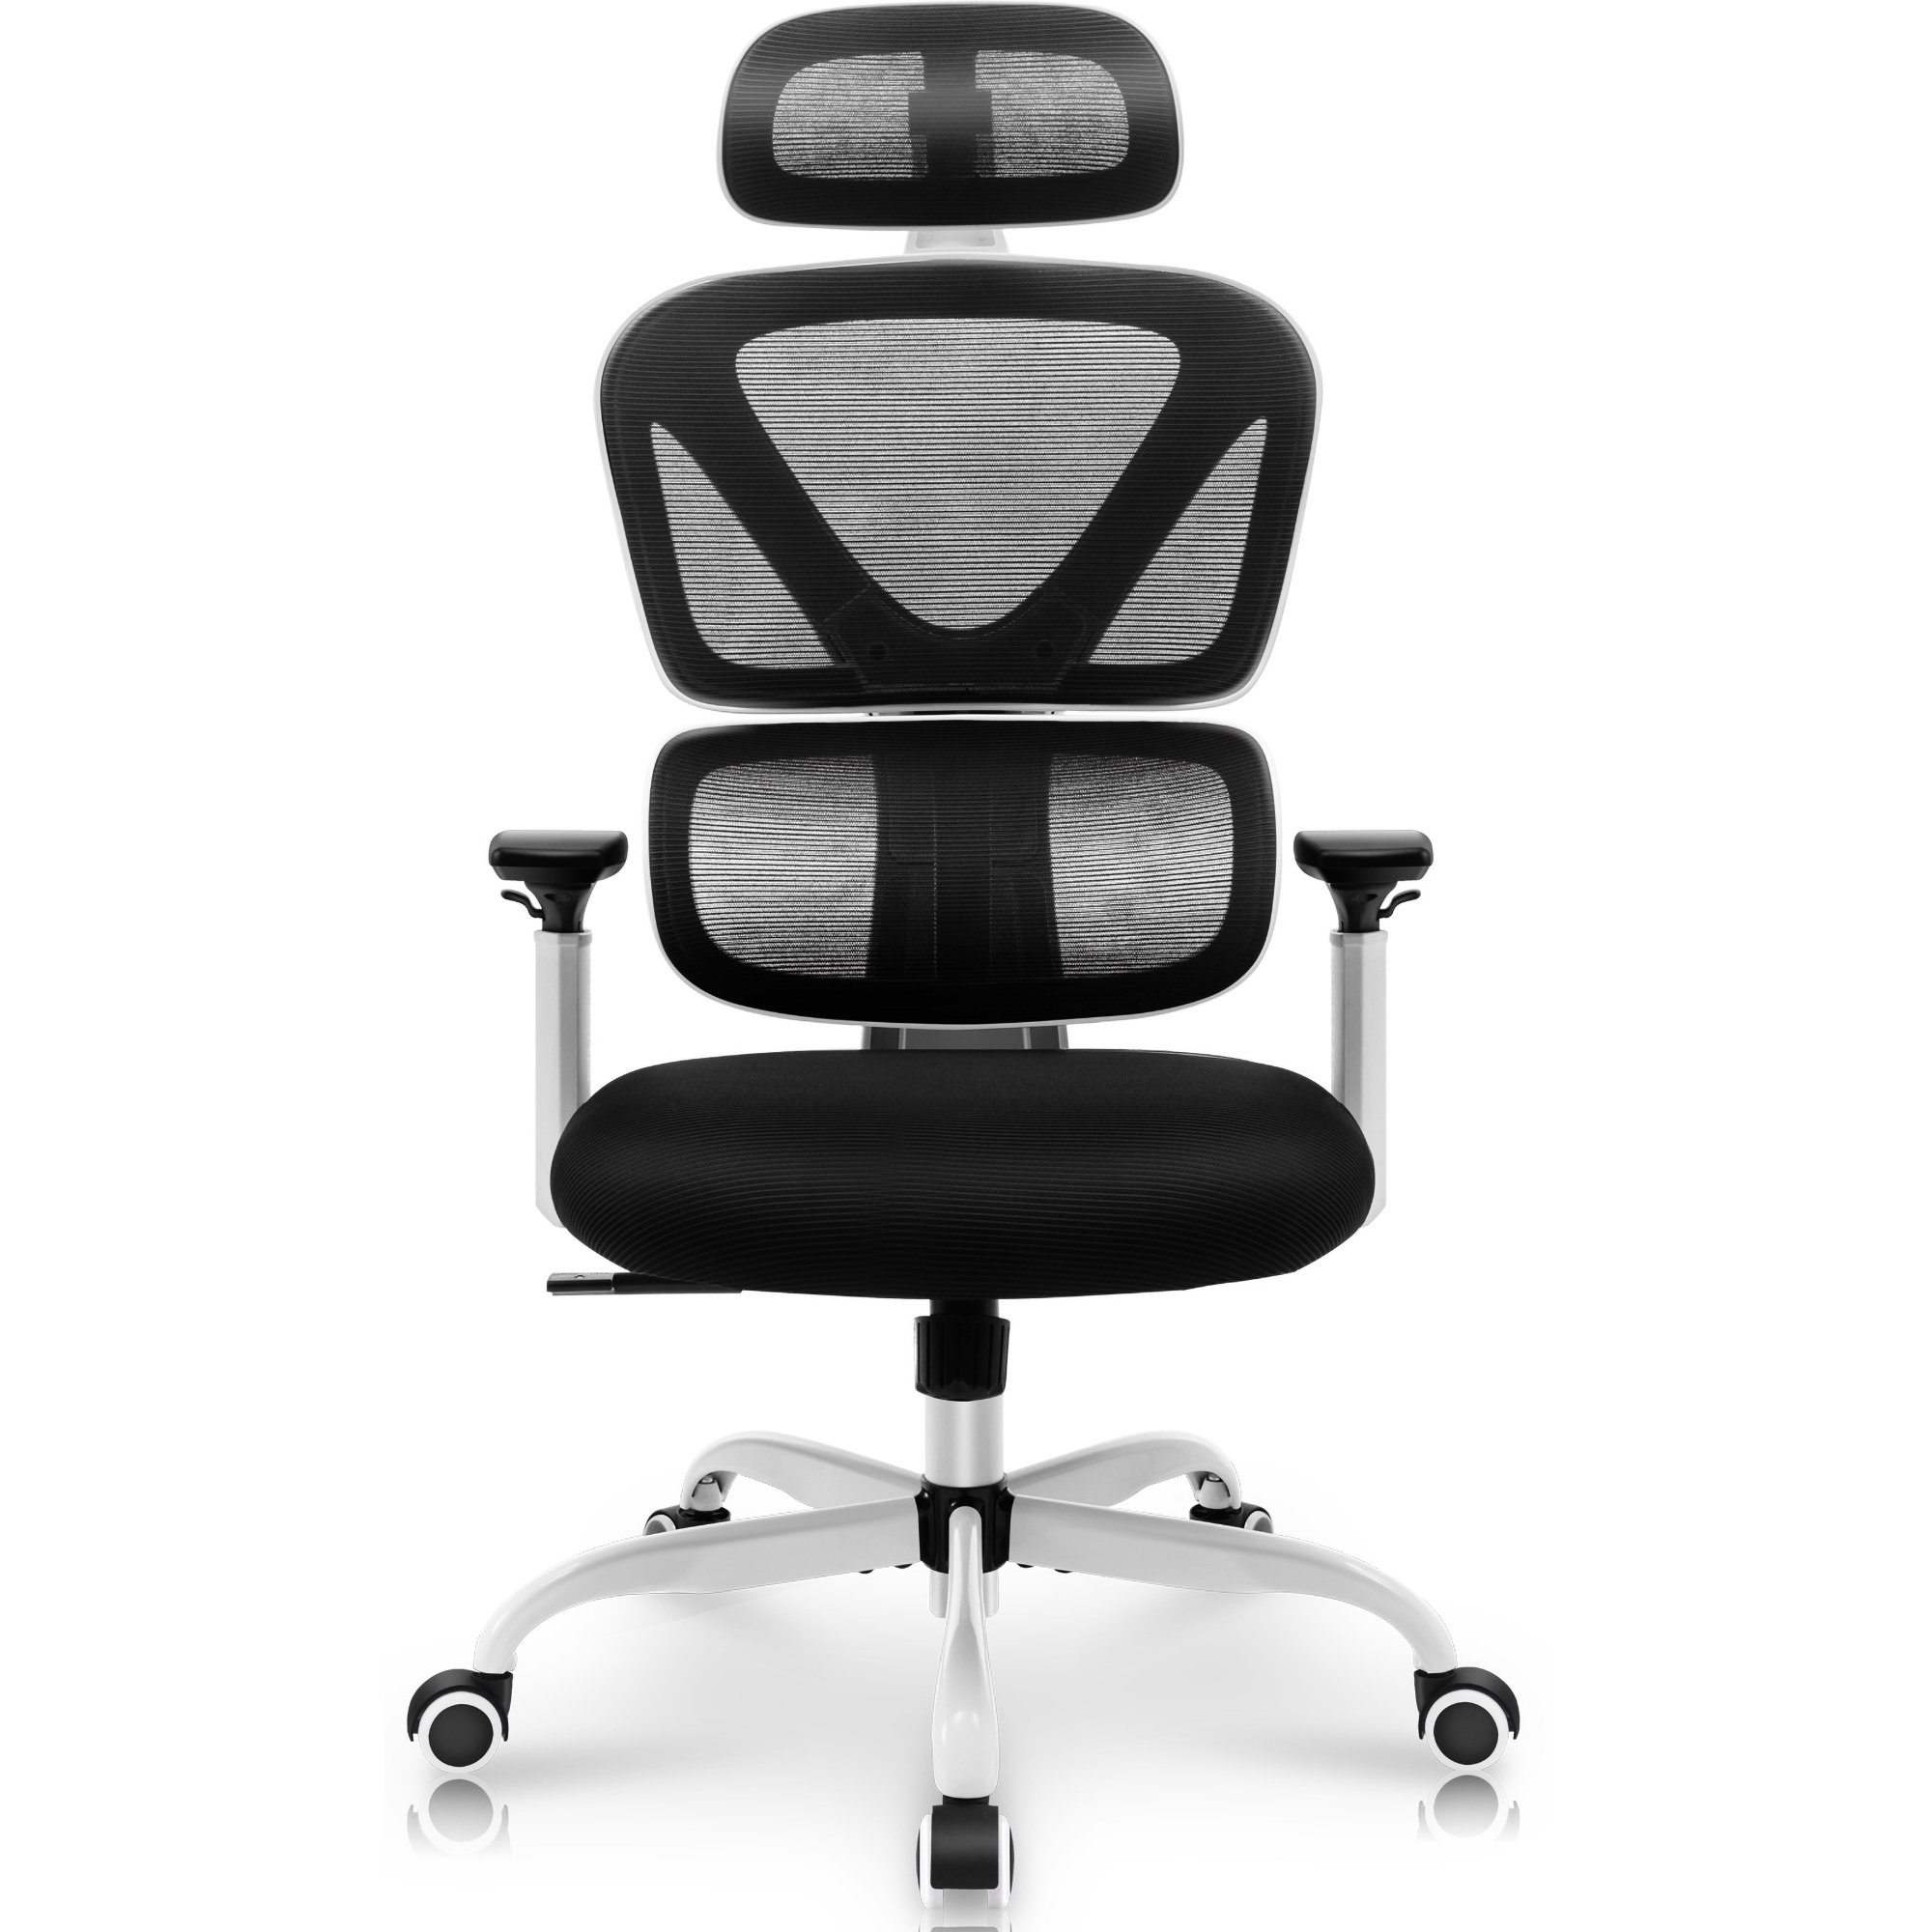 https://assets.wfcdn.com/im/70609516/compr-r85/2433/243301010/ergonomic-with-headrest.jpg